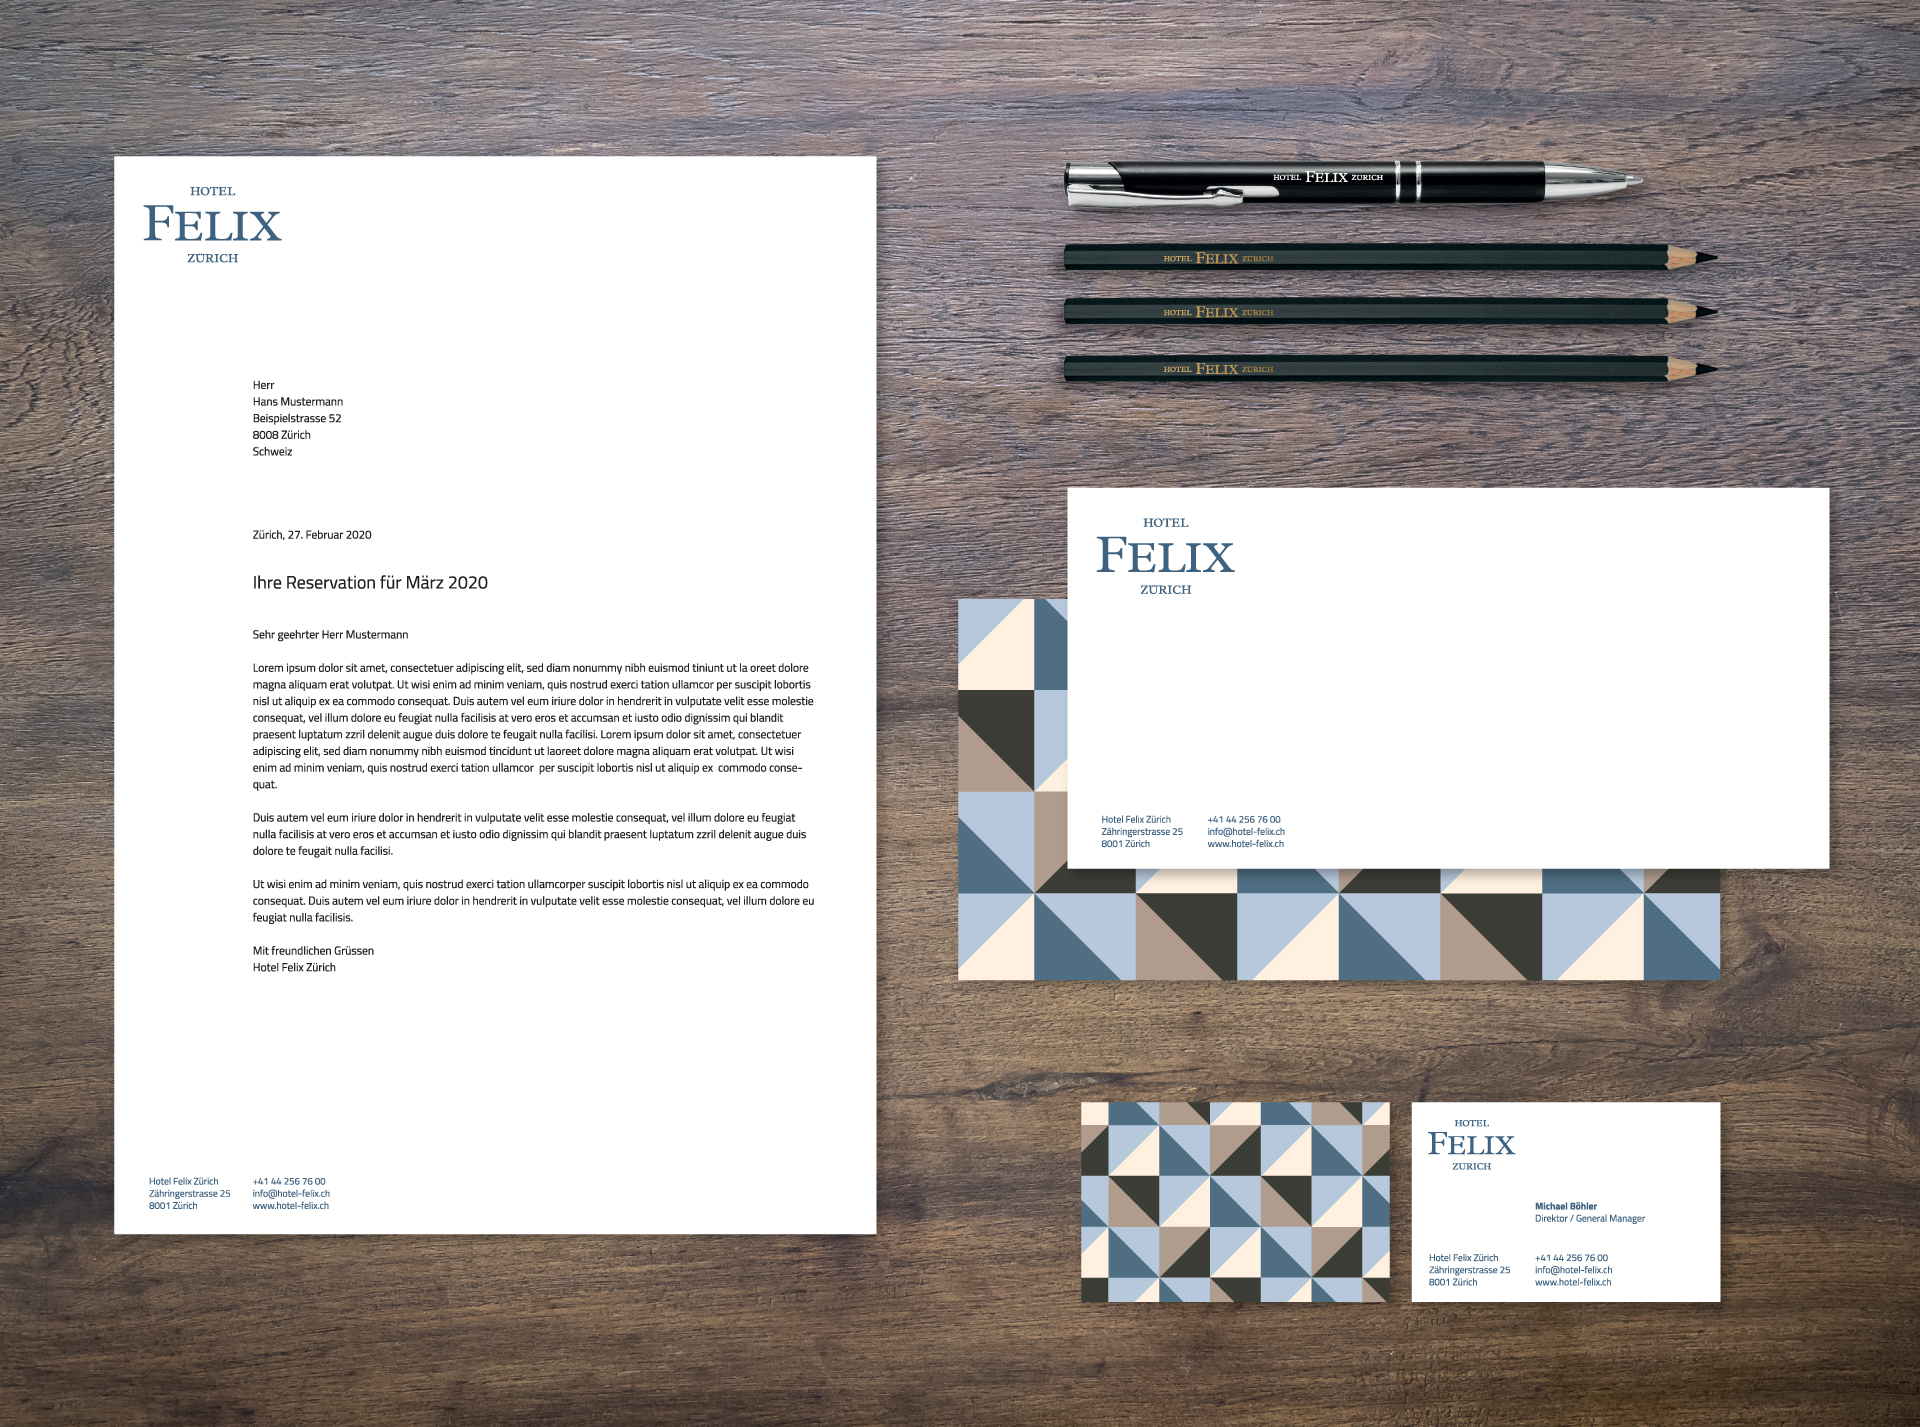 Logoentwicklung und sämtliche Briefschaften vom Hotel Felix, ein Hotel der Meili Selection AG.